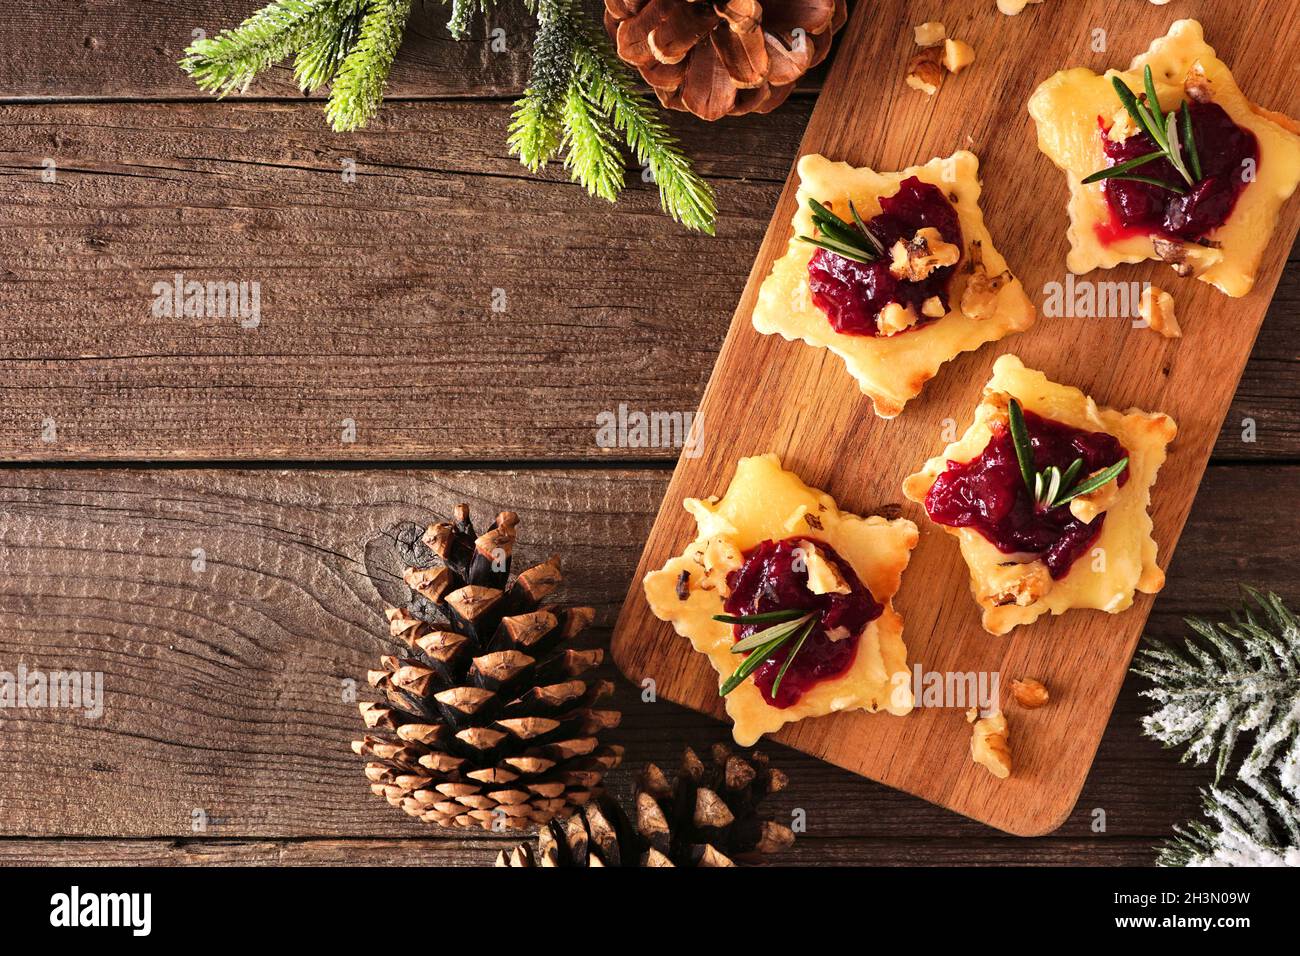 Weihnachtliche sternförmige Vorspeisen mit Preiselbeeren und gebratener Brie. Draufsicht auf einem Servierbrett vor einem Holzhintergrund. Speicherplatz kopieren. Stockfoto